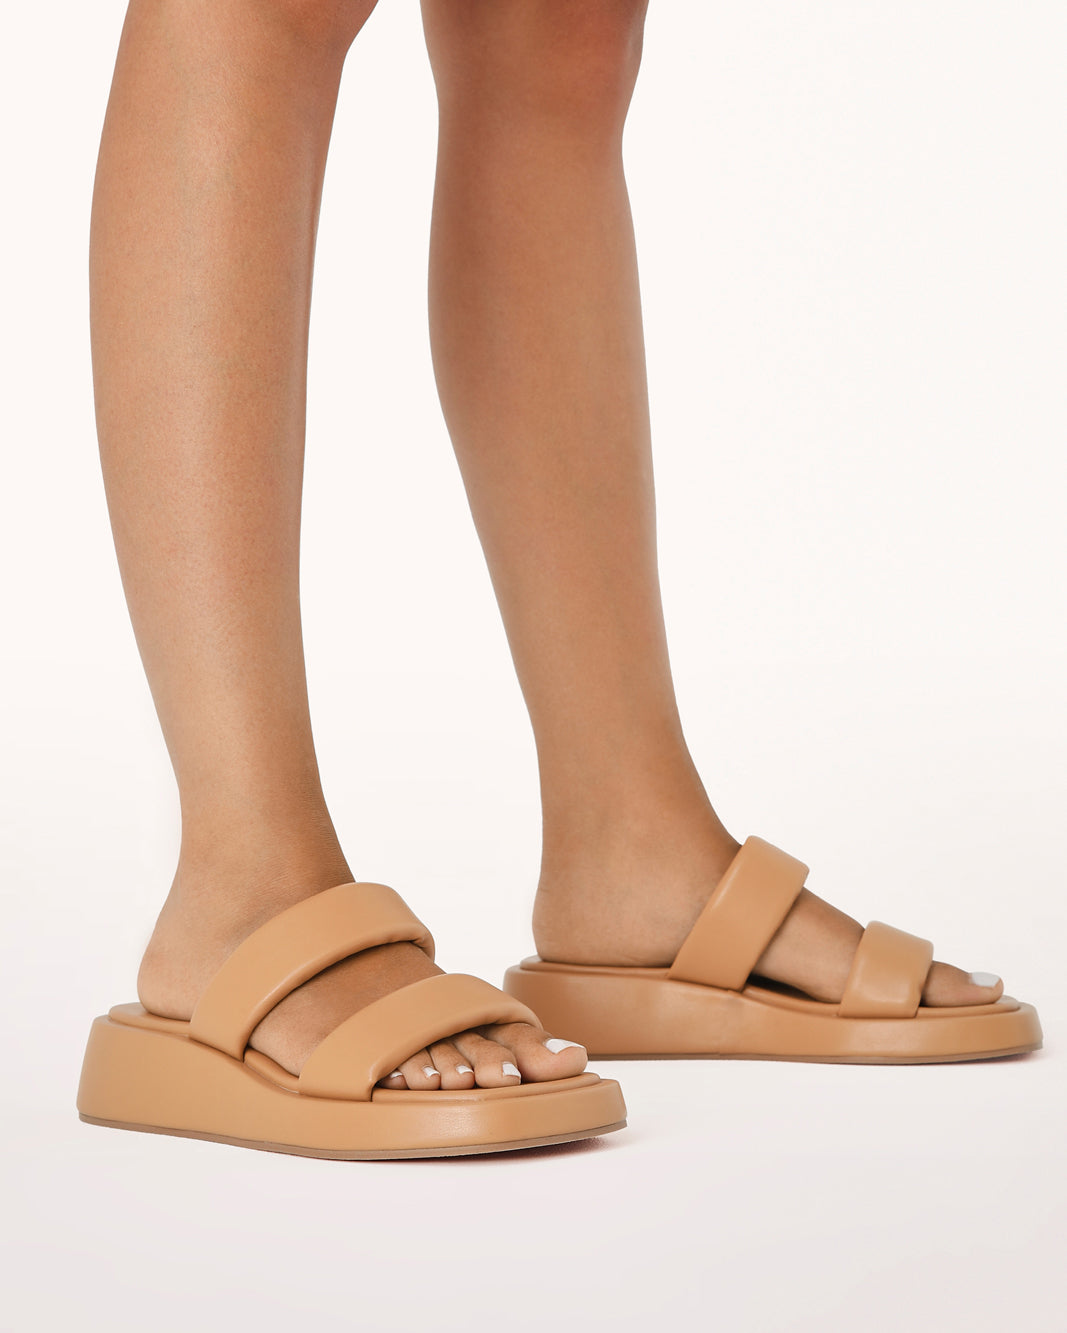 BOWEN - SAND-Sandals-Billini-Billini